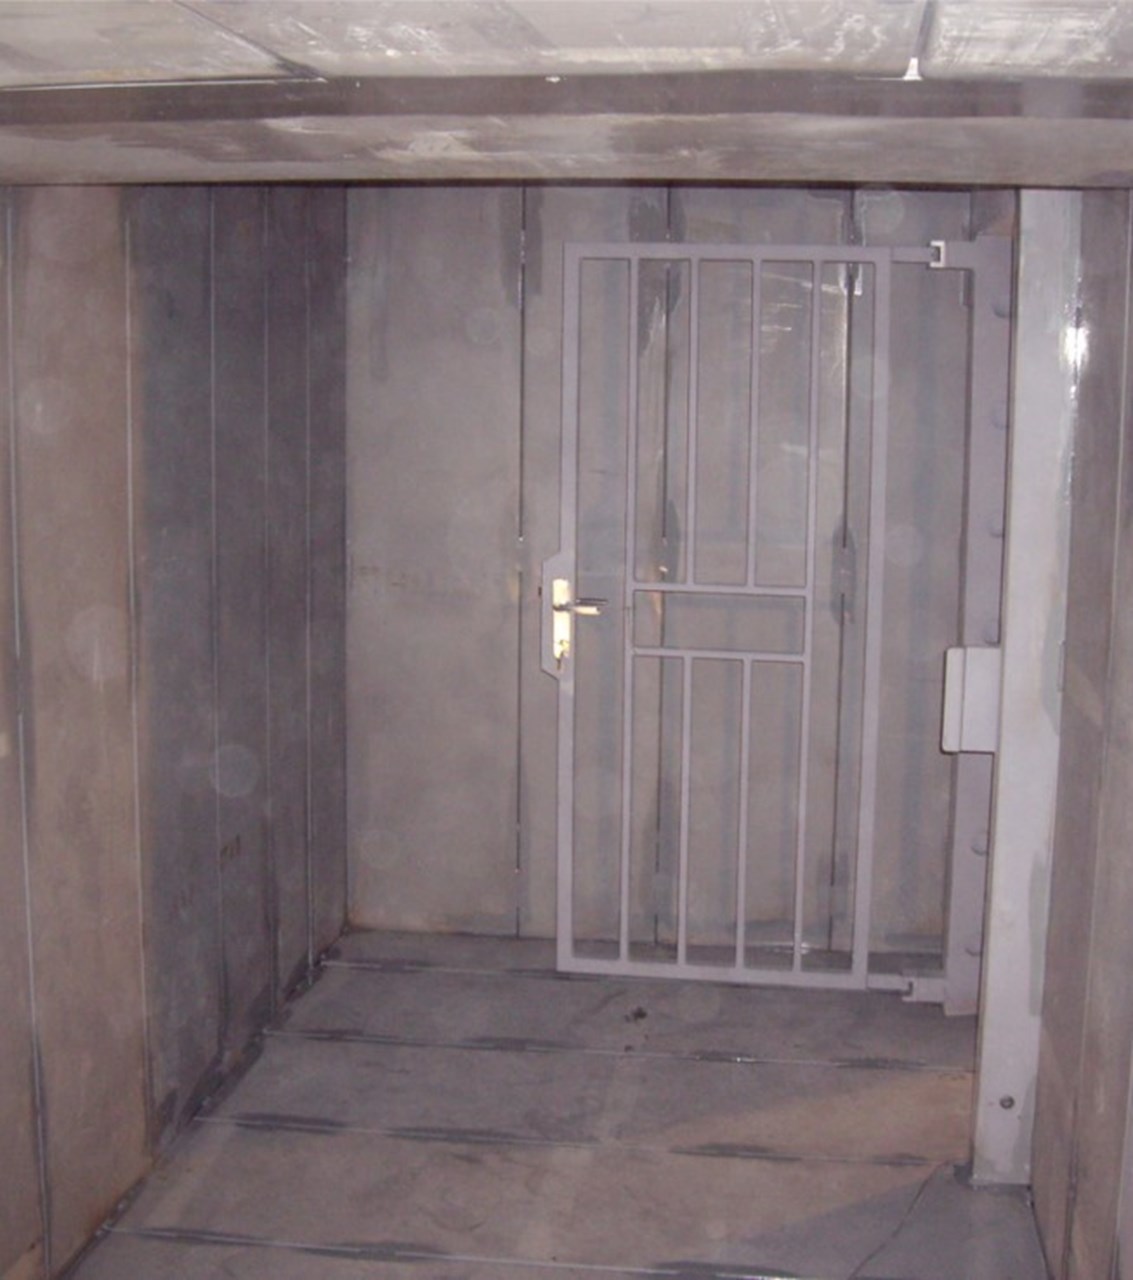 Construction of a Modulprim vault room